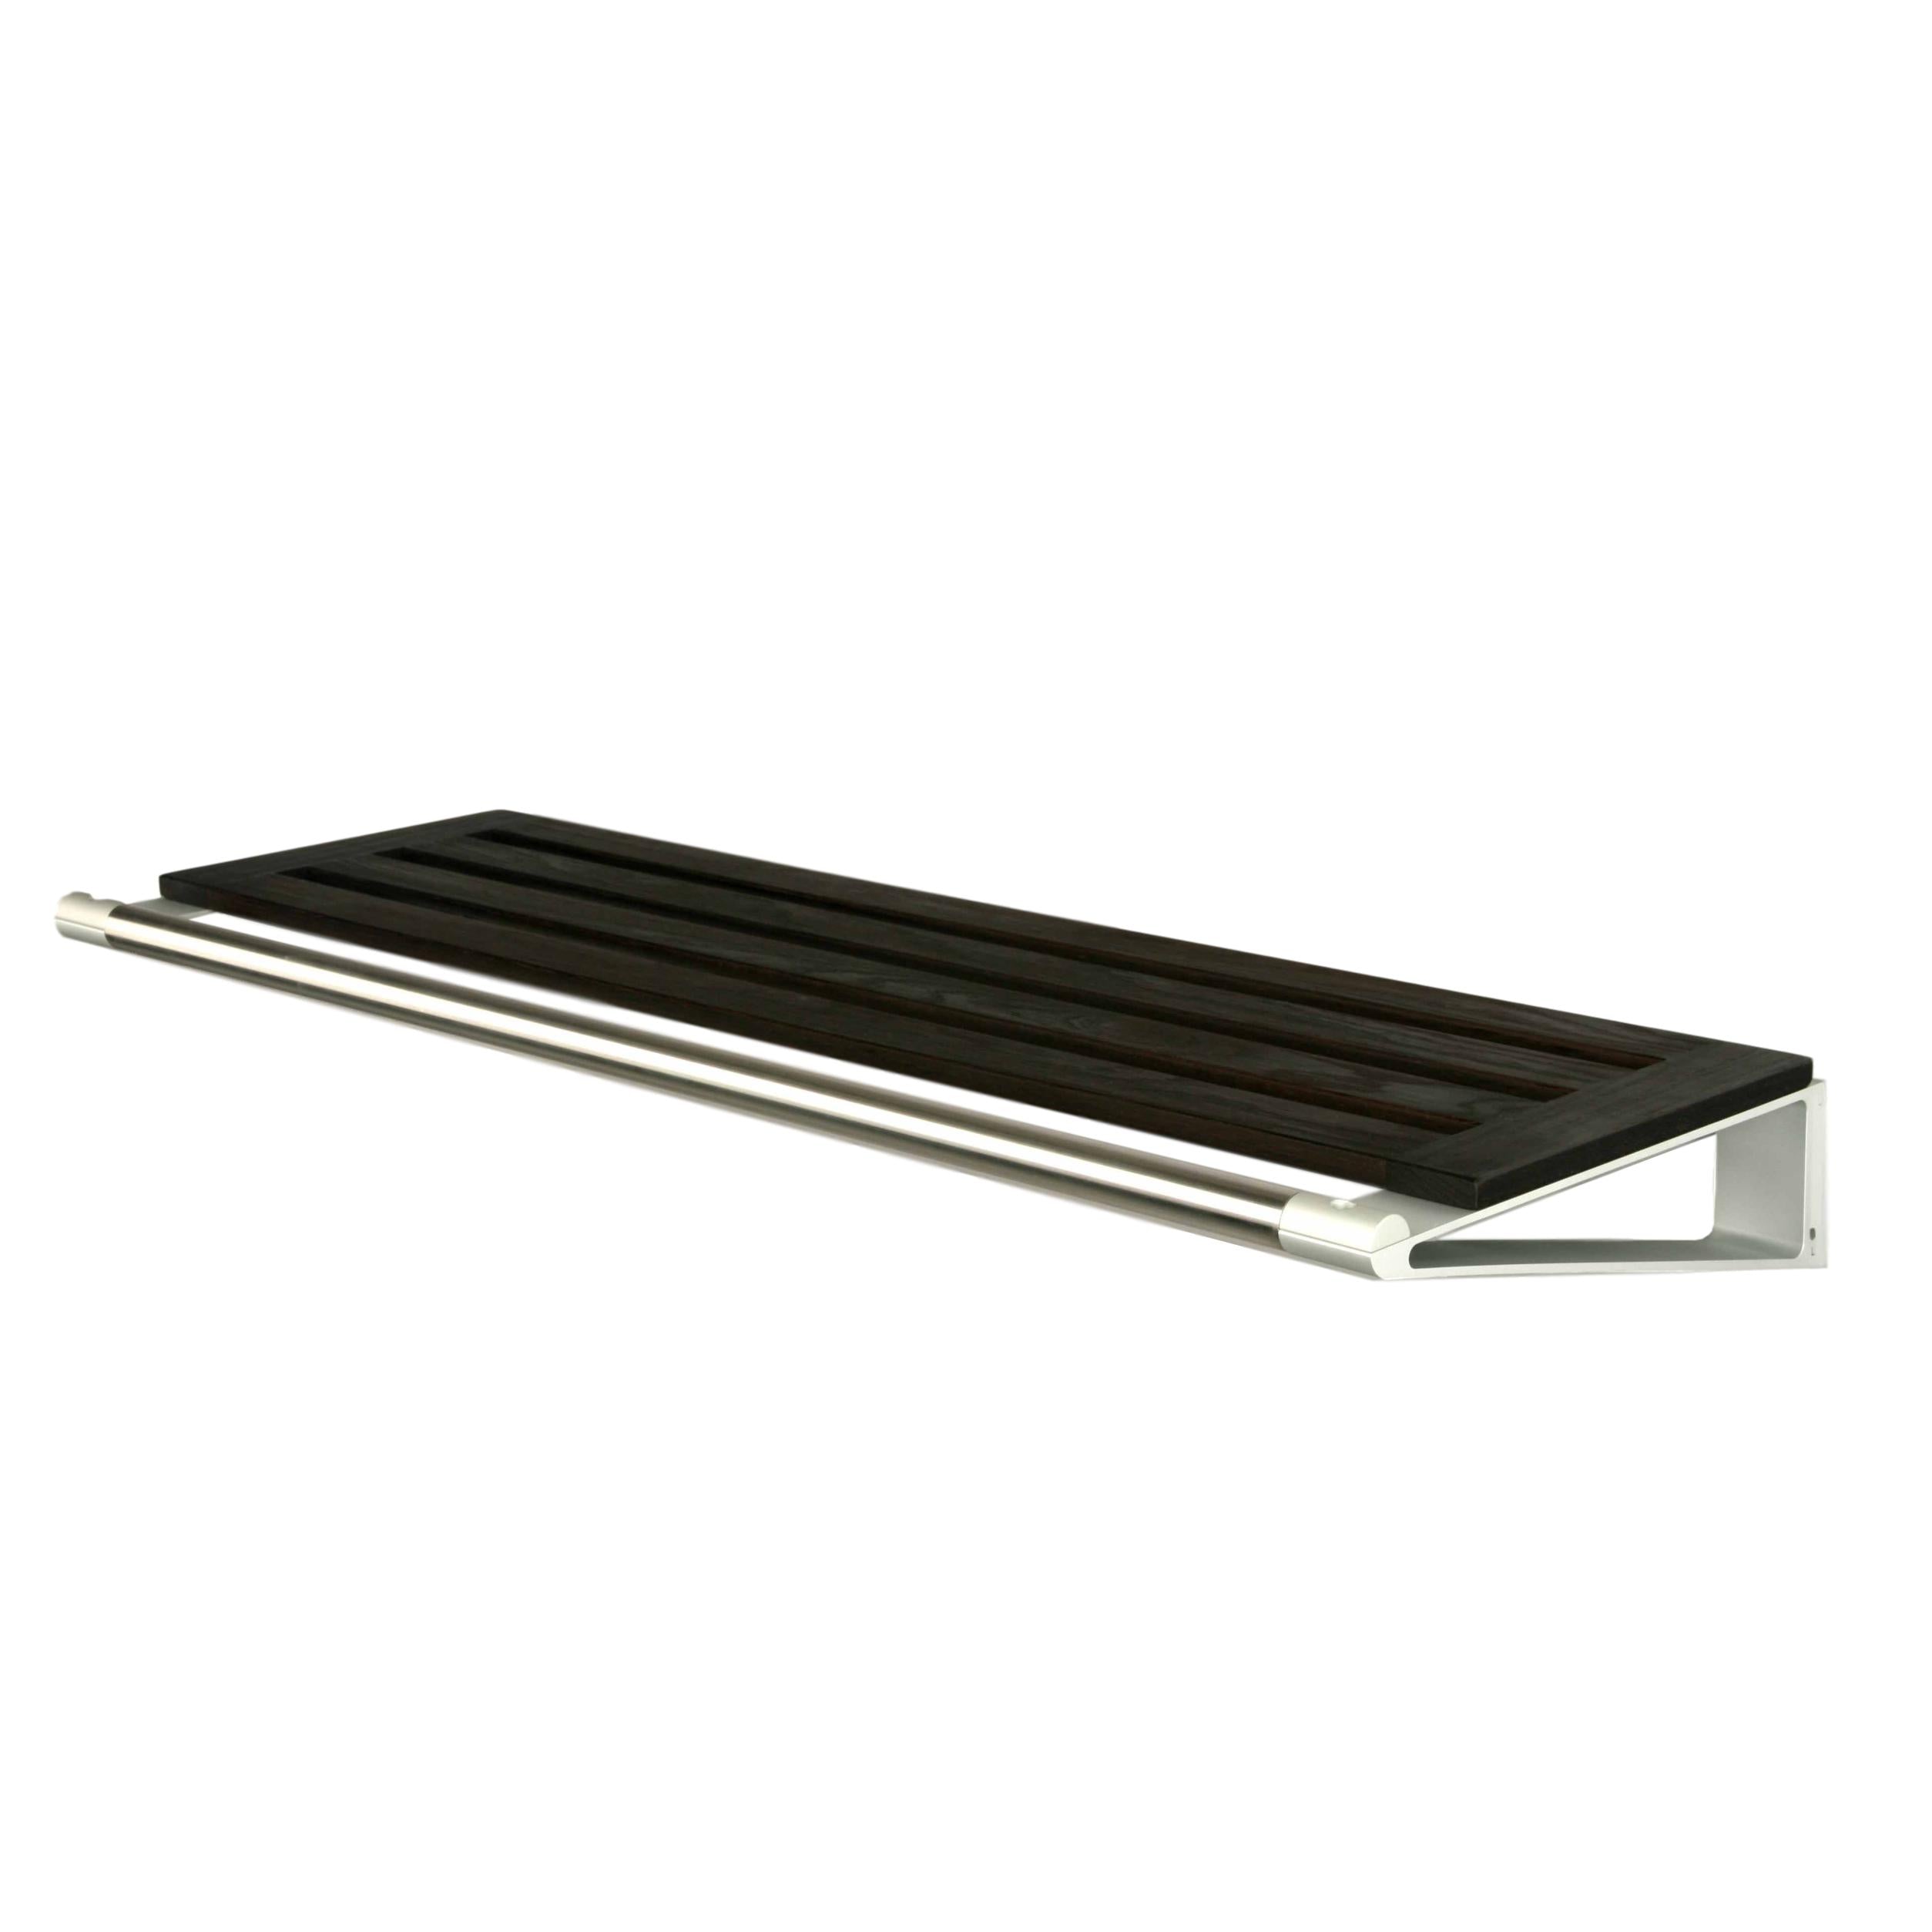 Loca Knax Hat Shelf 40 cm, quercia tabac/alluminio